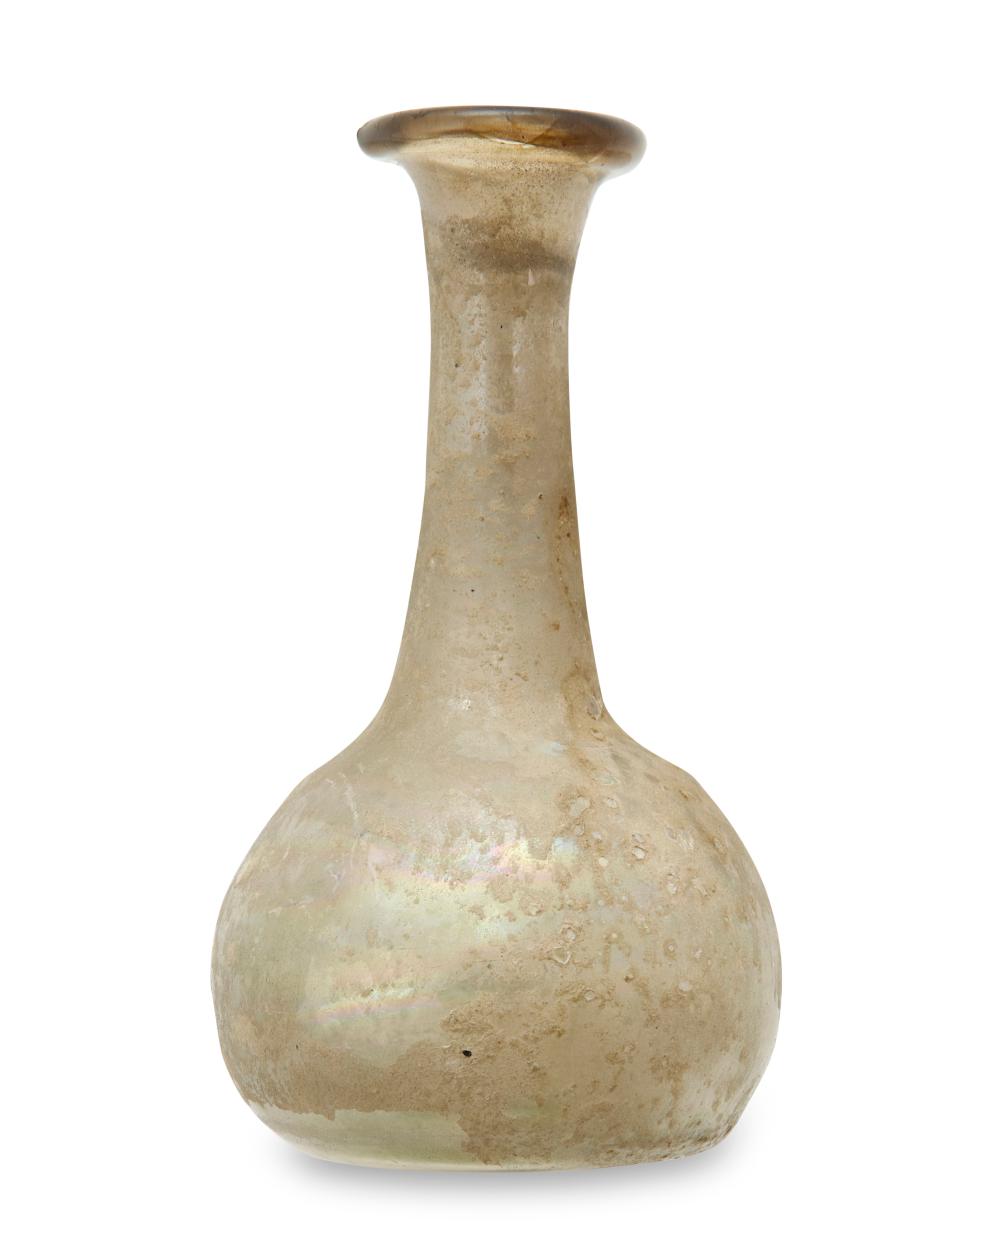 A ROMAN-STYLE GLASS BUD VASEA Roman-style